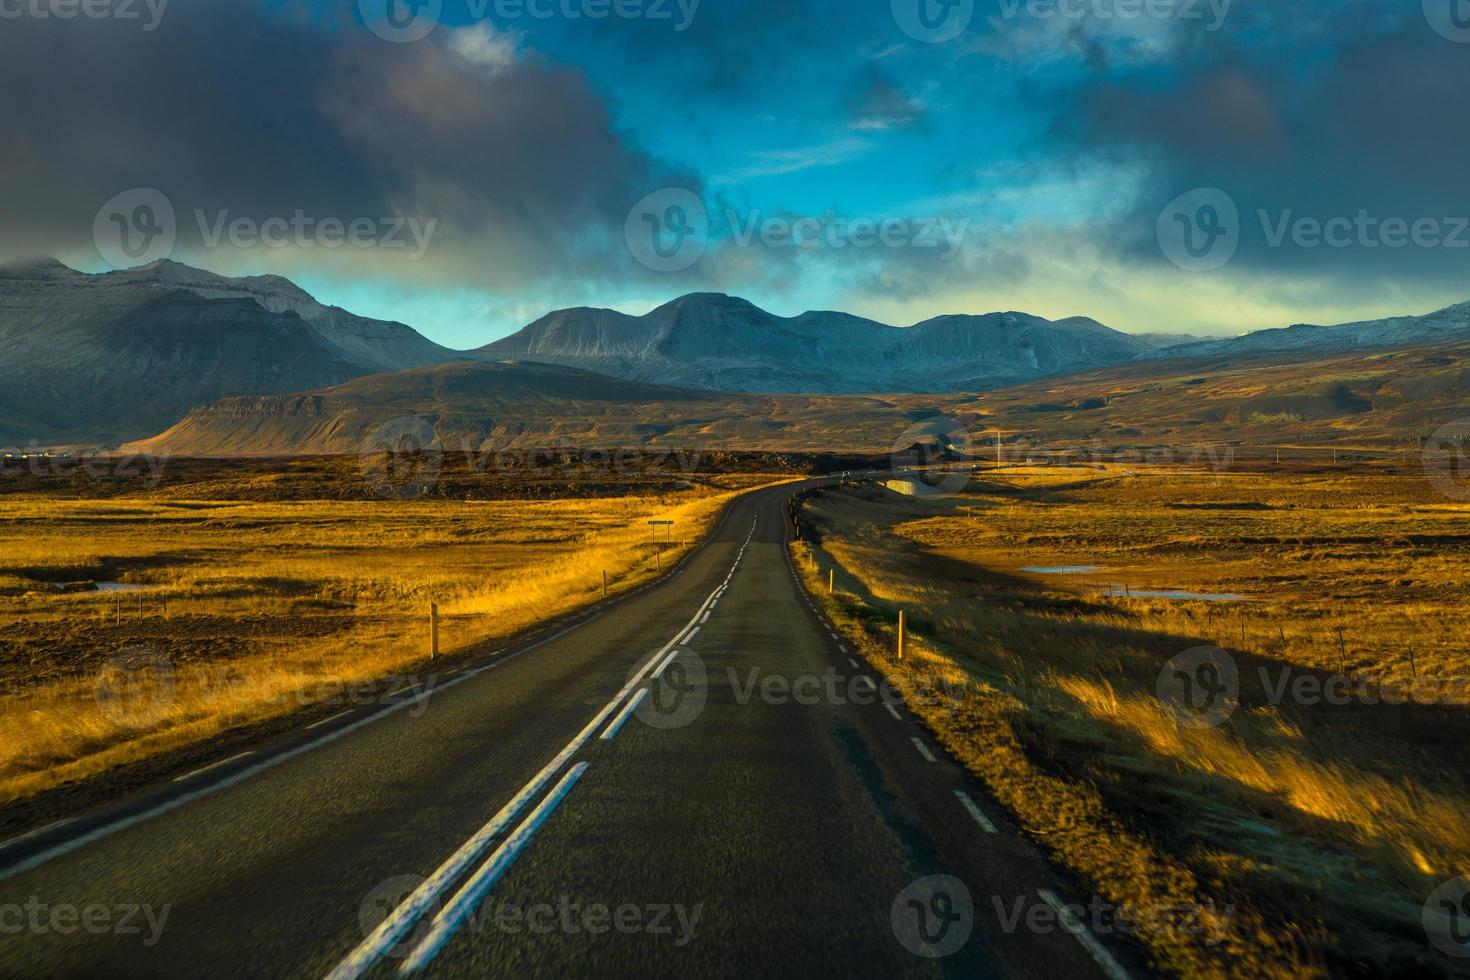 ruta 1 o carretera de circunvalación, o hringvegur, una carretera nacional que recorre islandia y conecta la mayor parte de las zonas habitadas del país foto